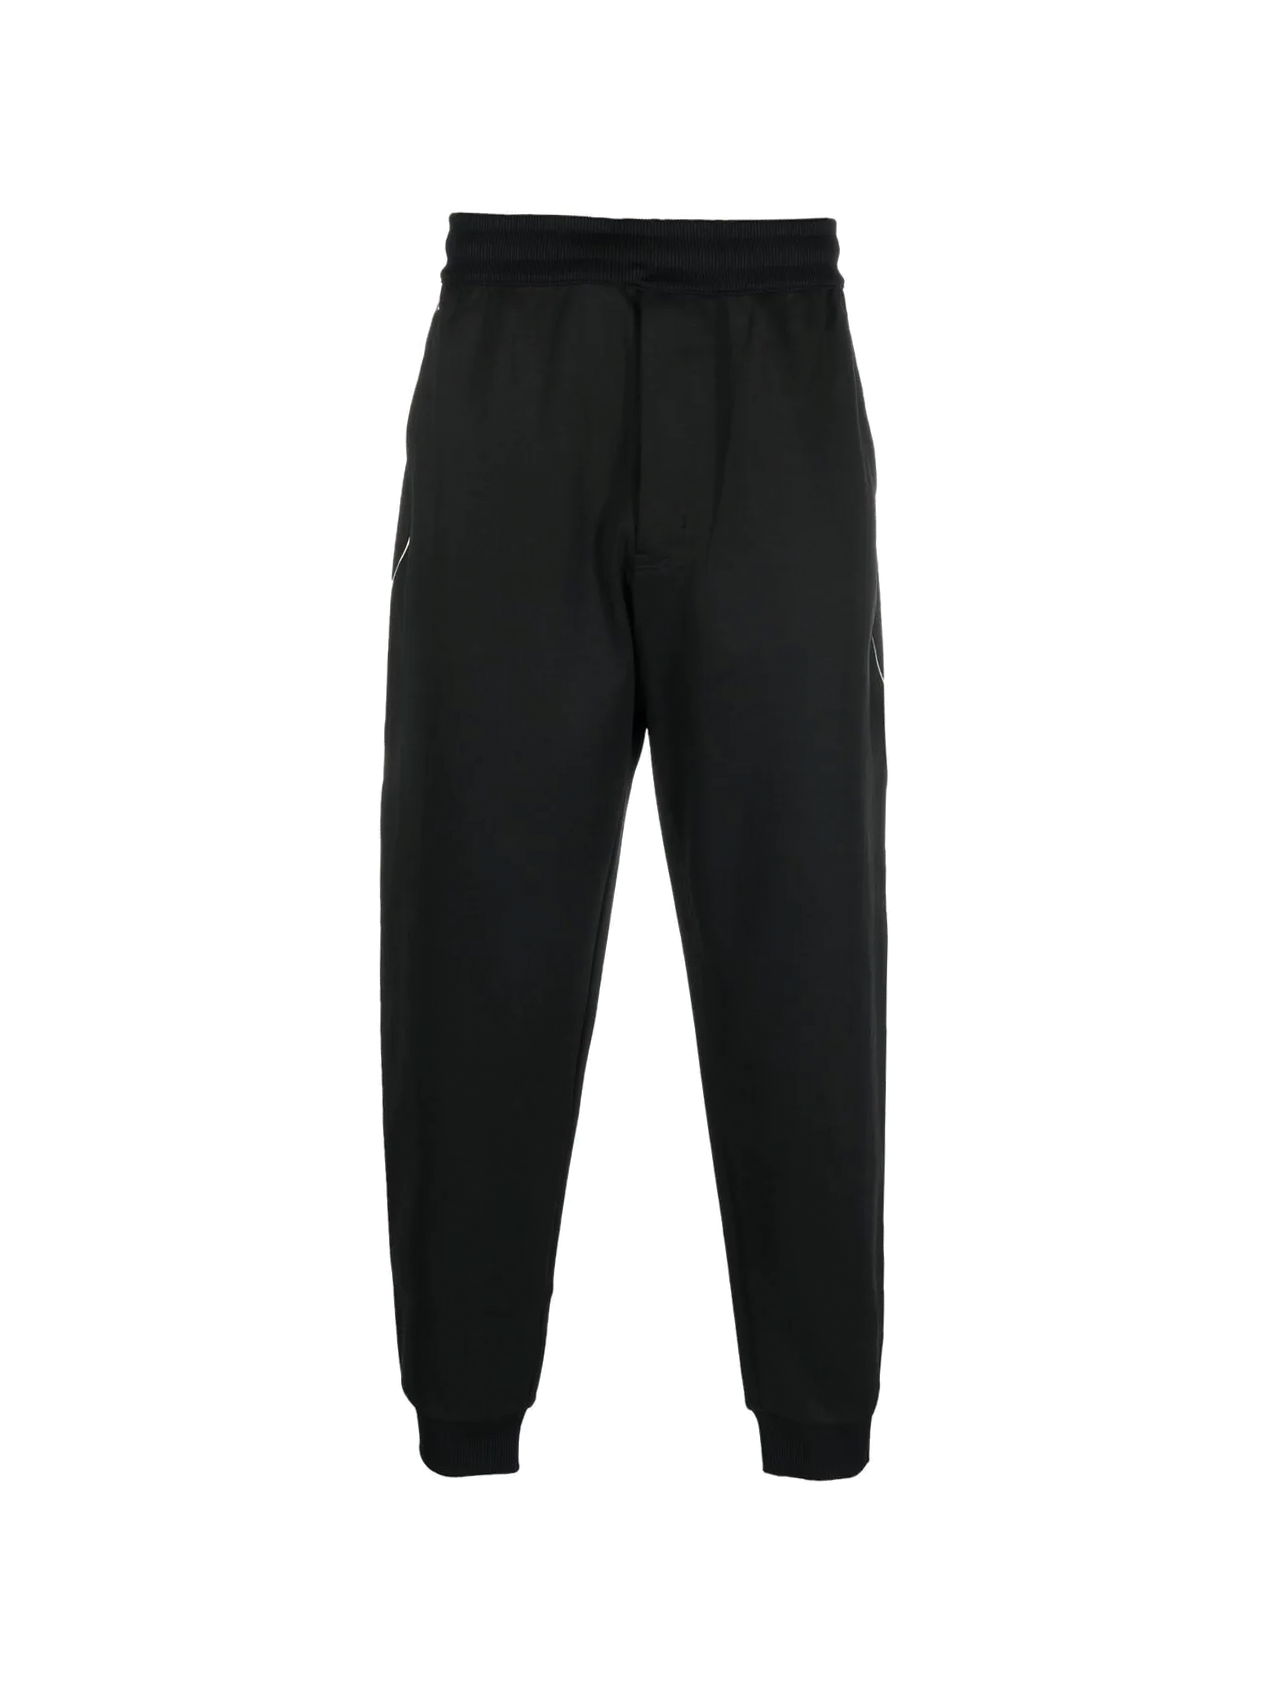 Y-3: Black Cuffed Sweatpants